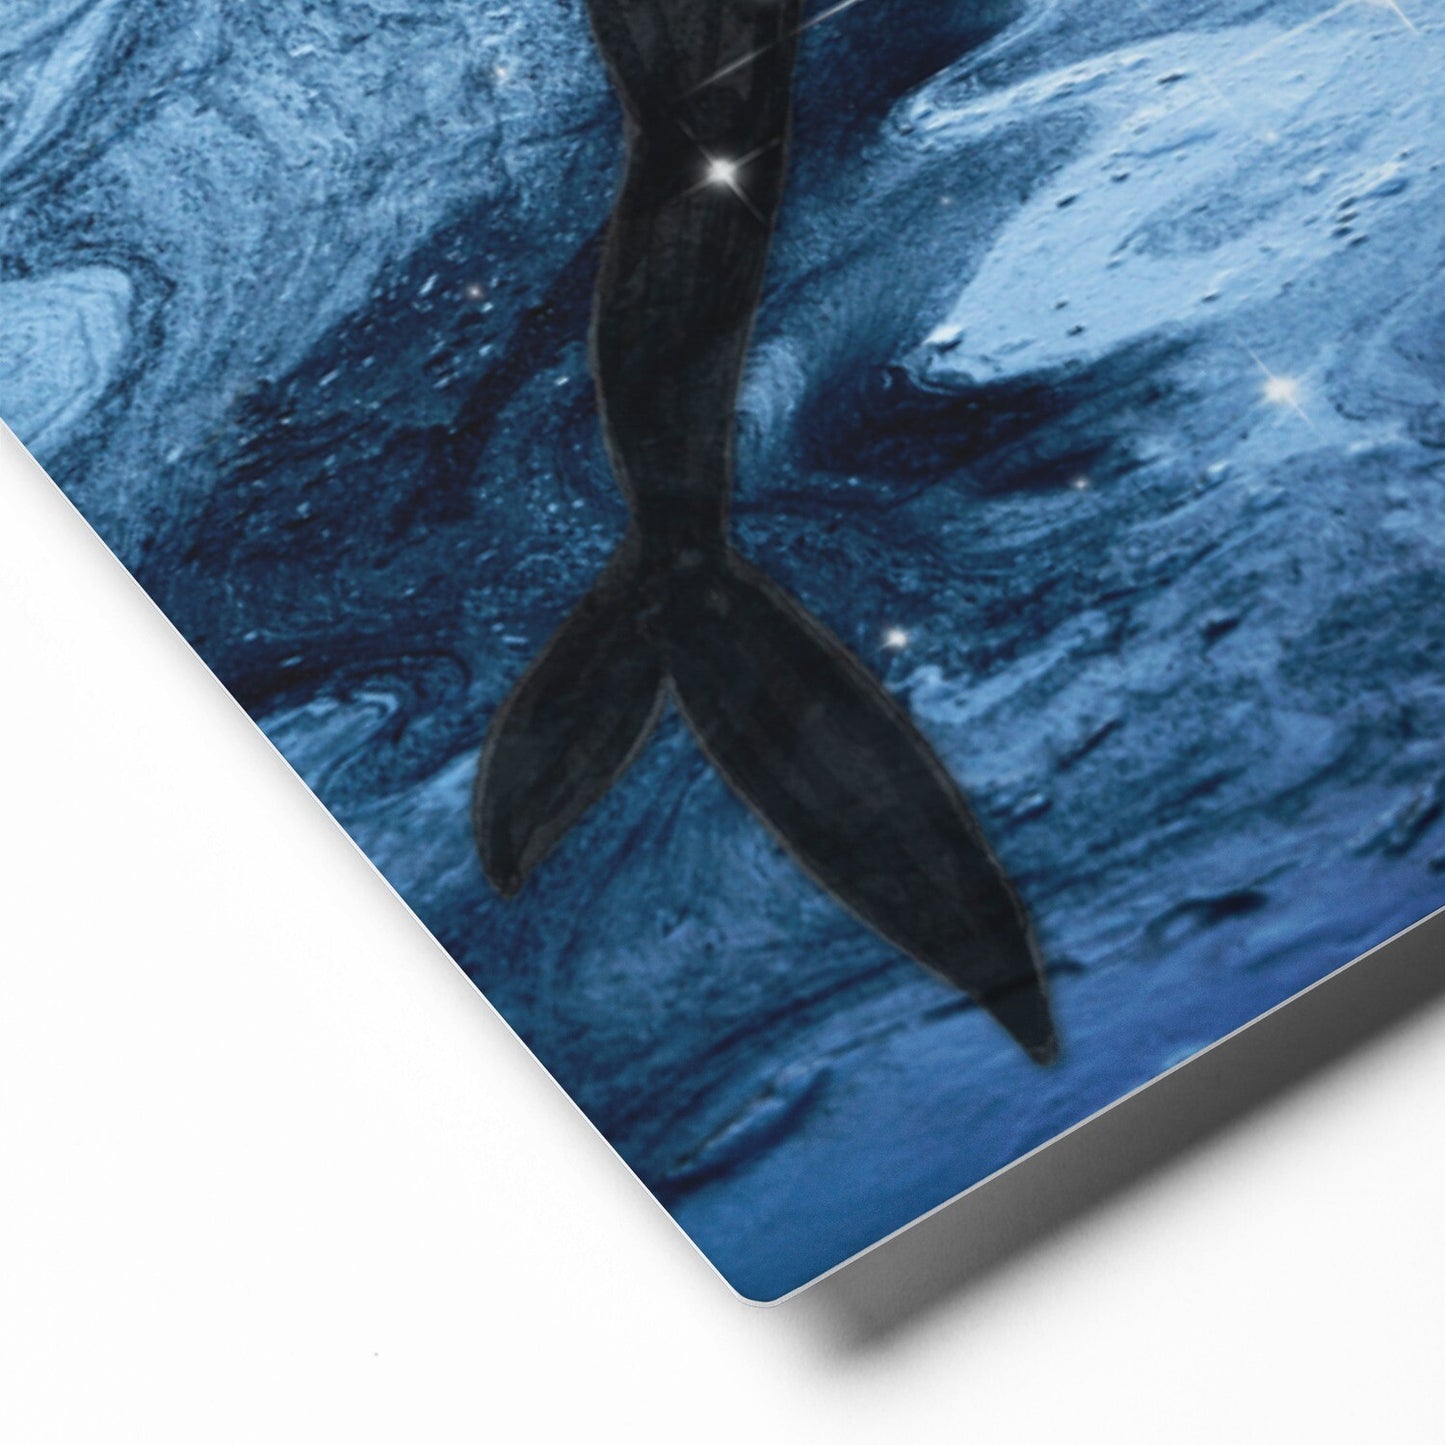 Underwater Mermaid Metal Print: "Into the Blue"